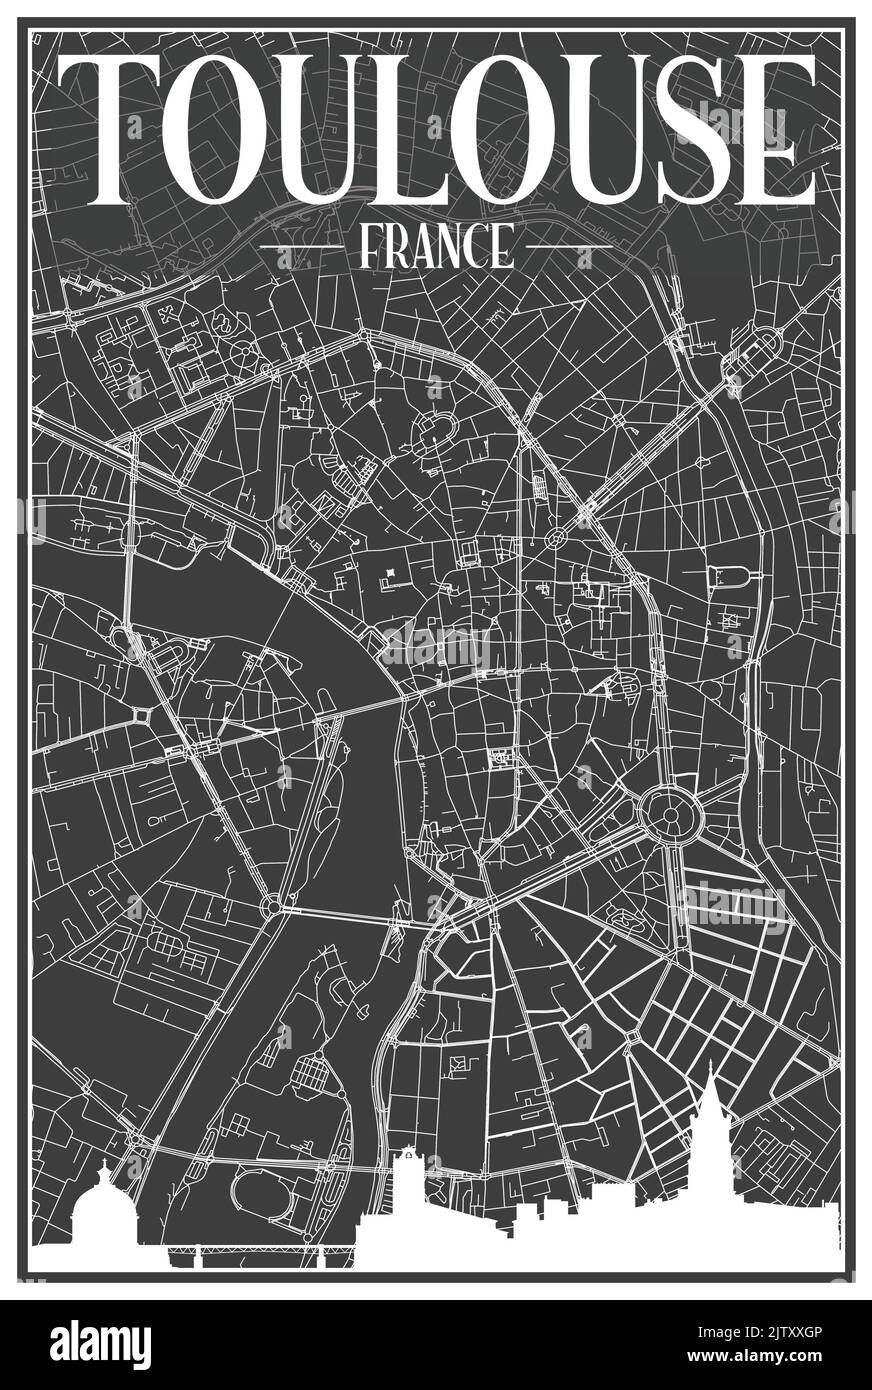 Impression sombre affiche de la ville avec vue panoramique et rues dessinées à la main sur fond gris foncé du centre-ville DE TOULOUSE, FRANCE Illustration de Vecteur